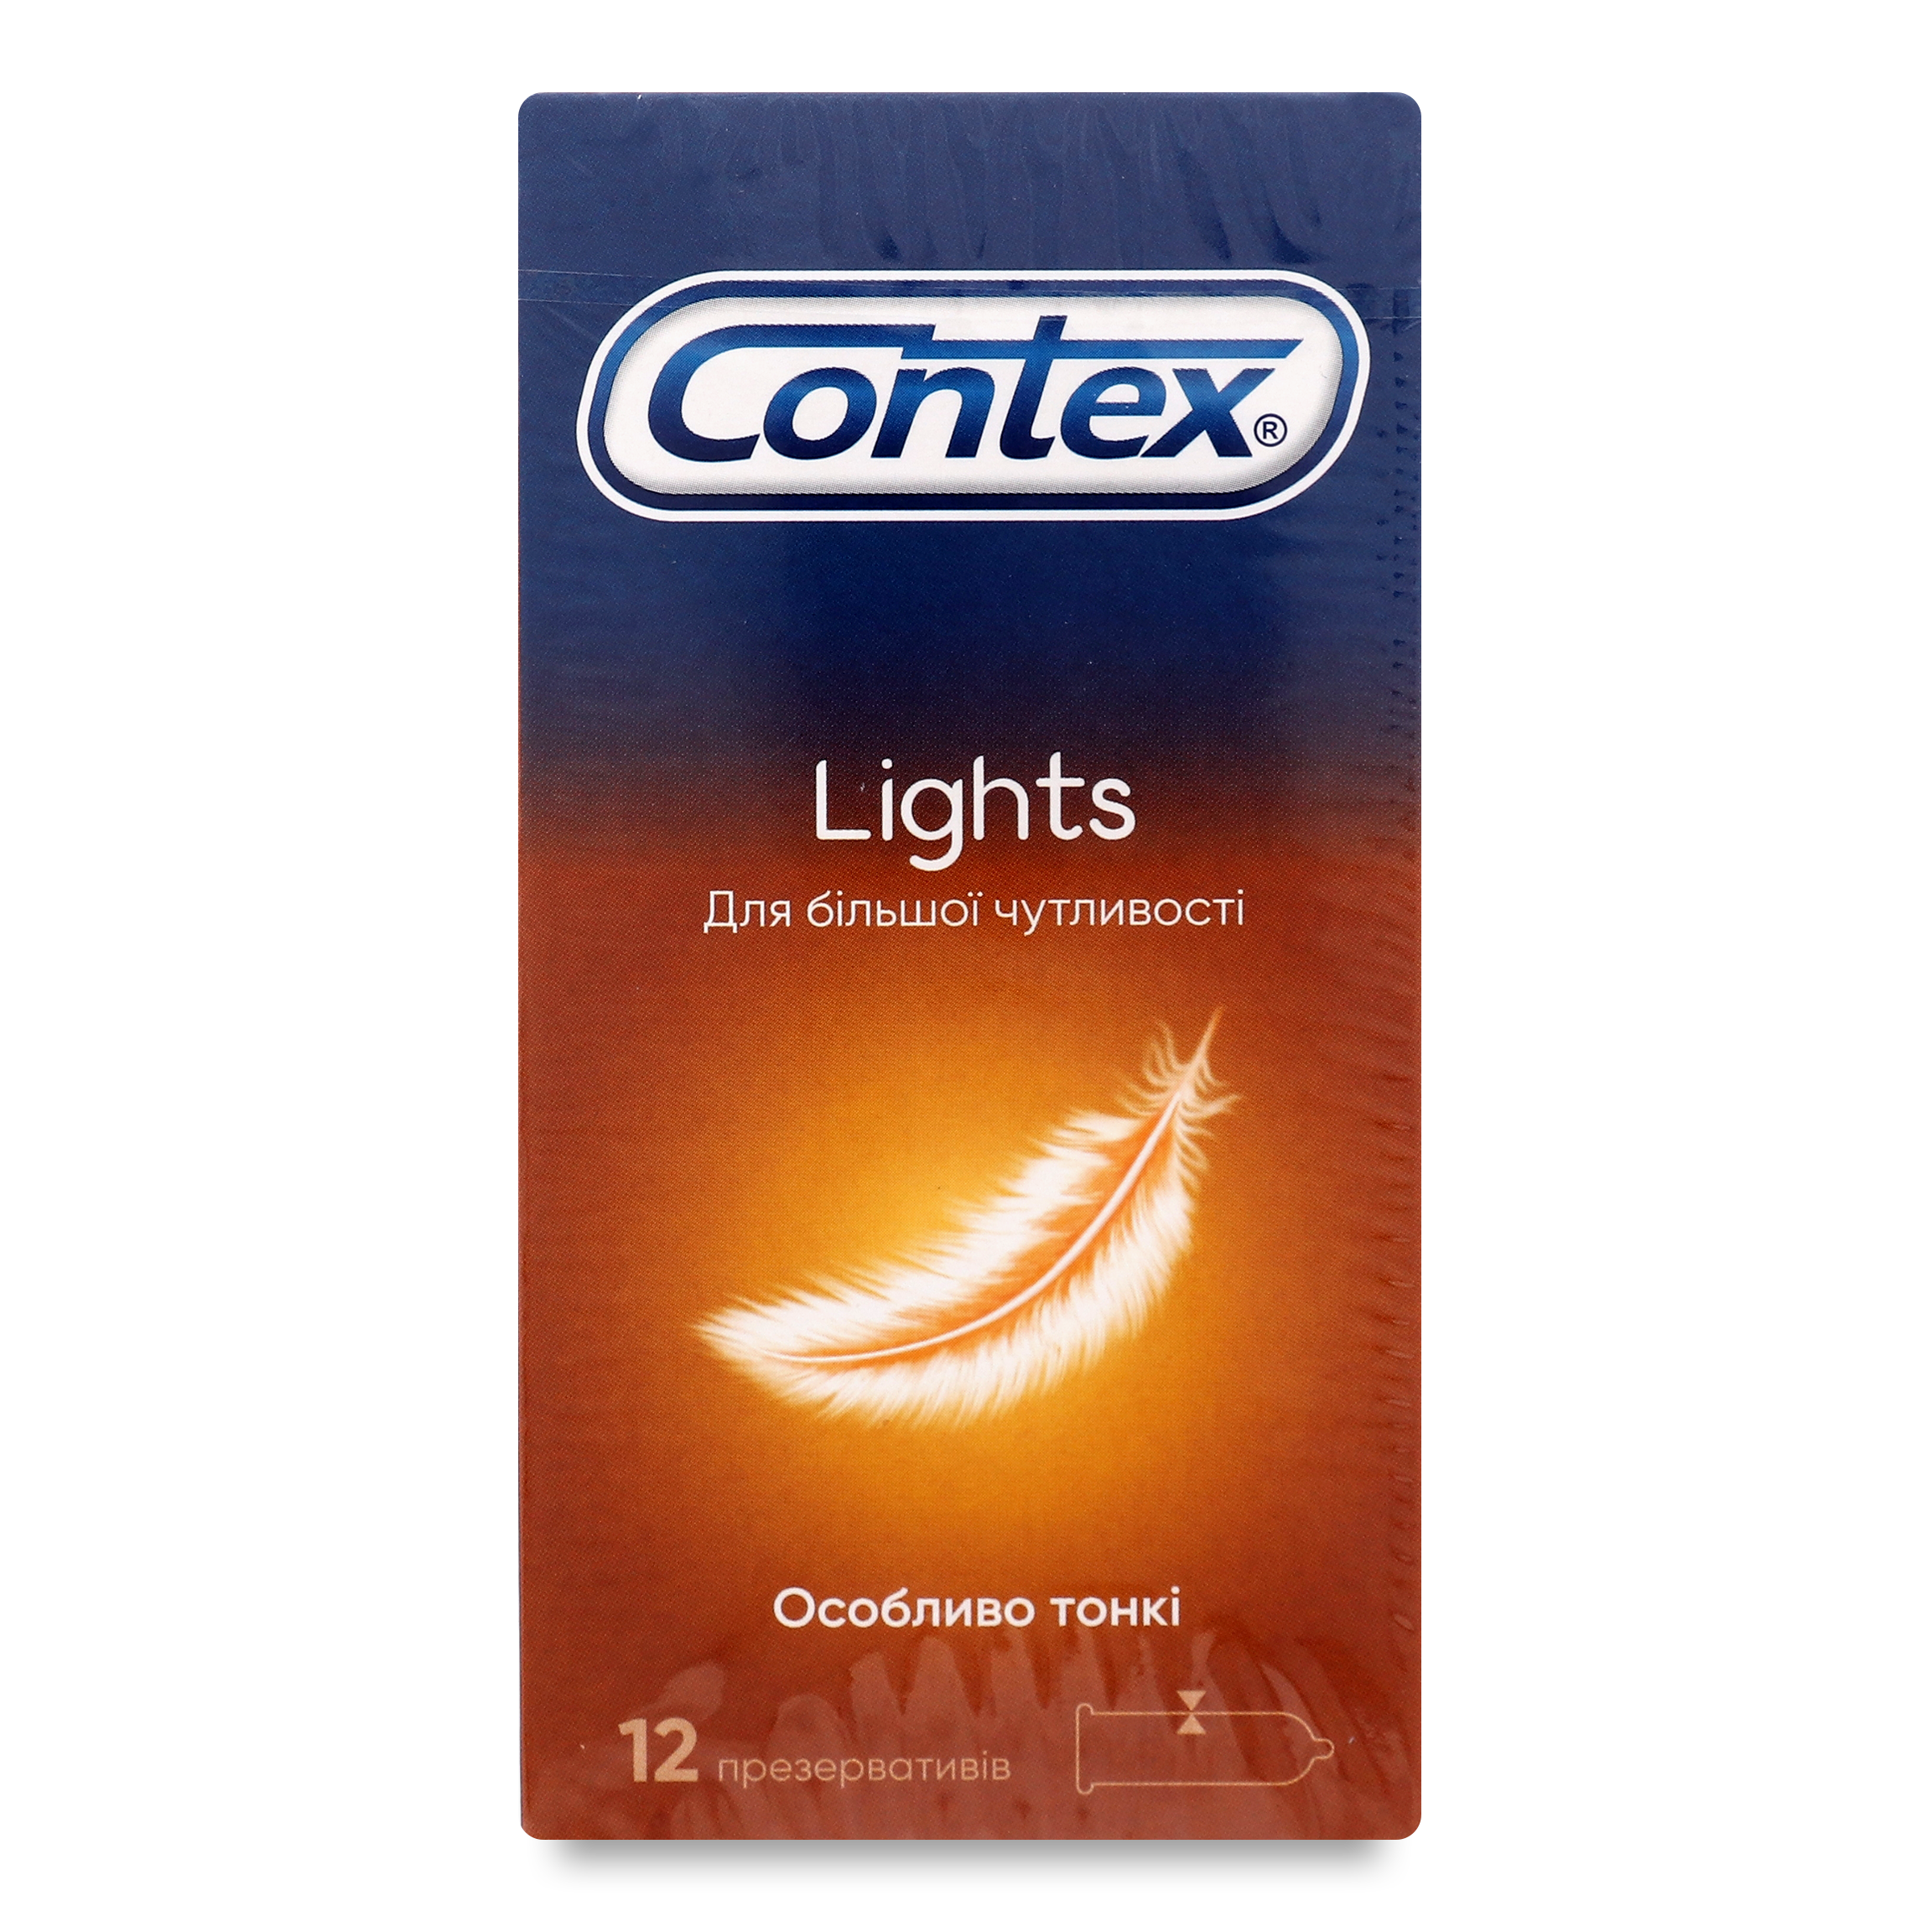 Contex Lights Condom 12pcs